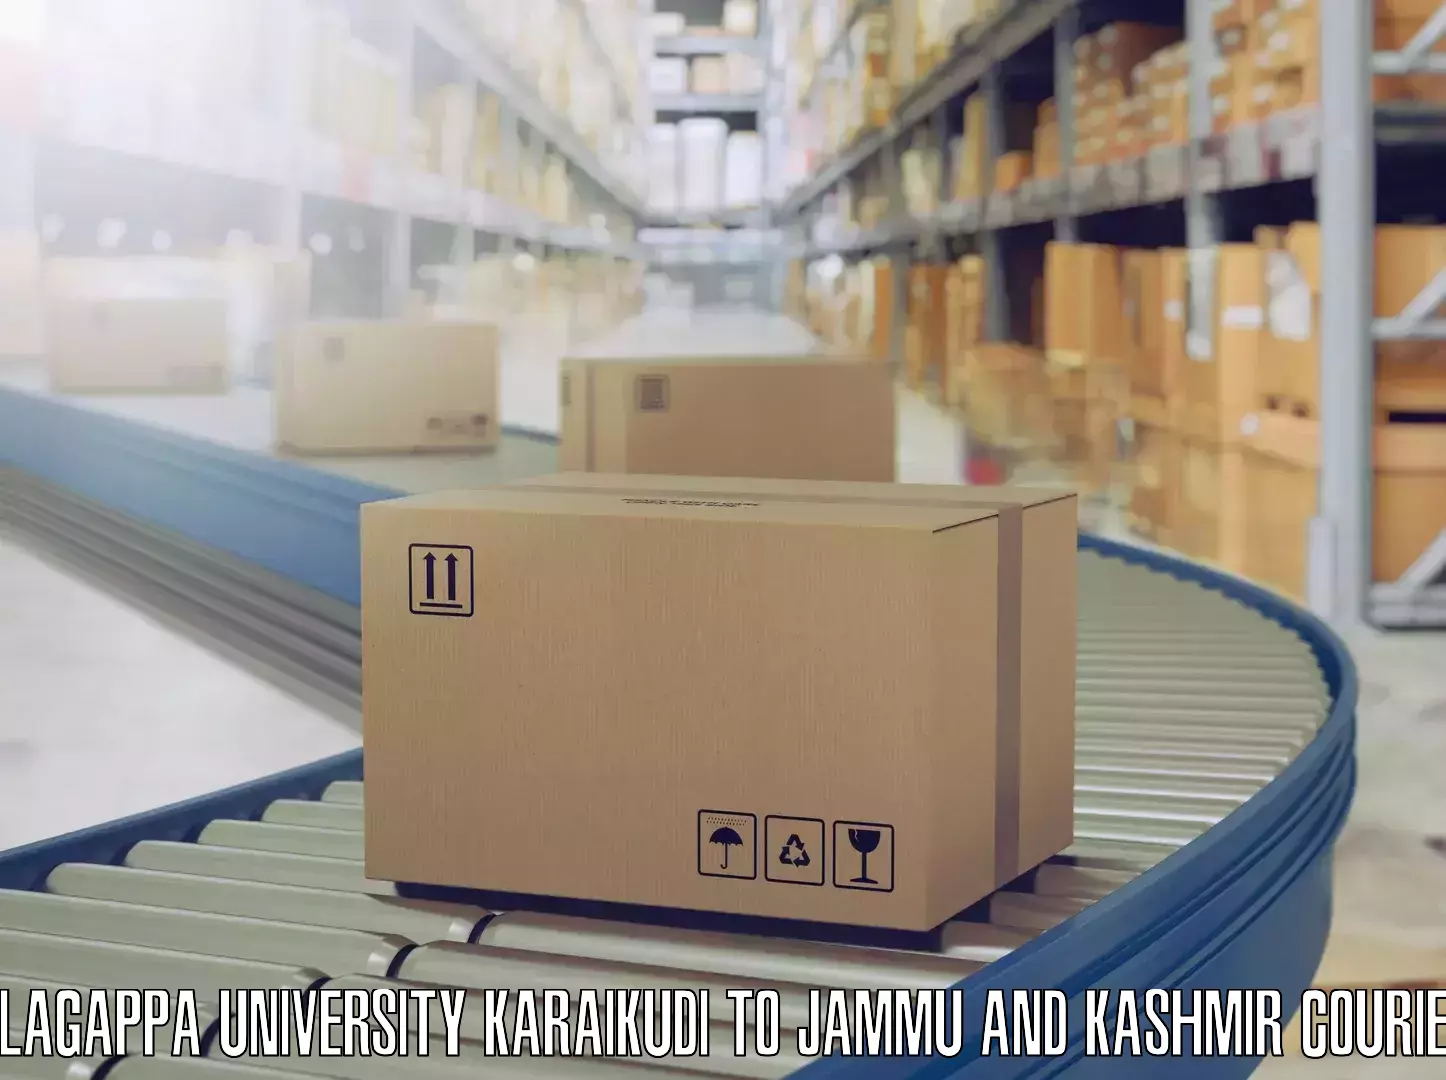 Furniture delivery service Alagappa University Karaikudi to Kargil